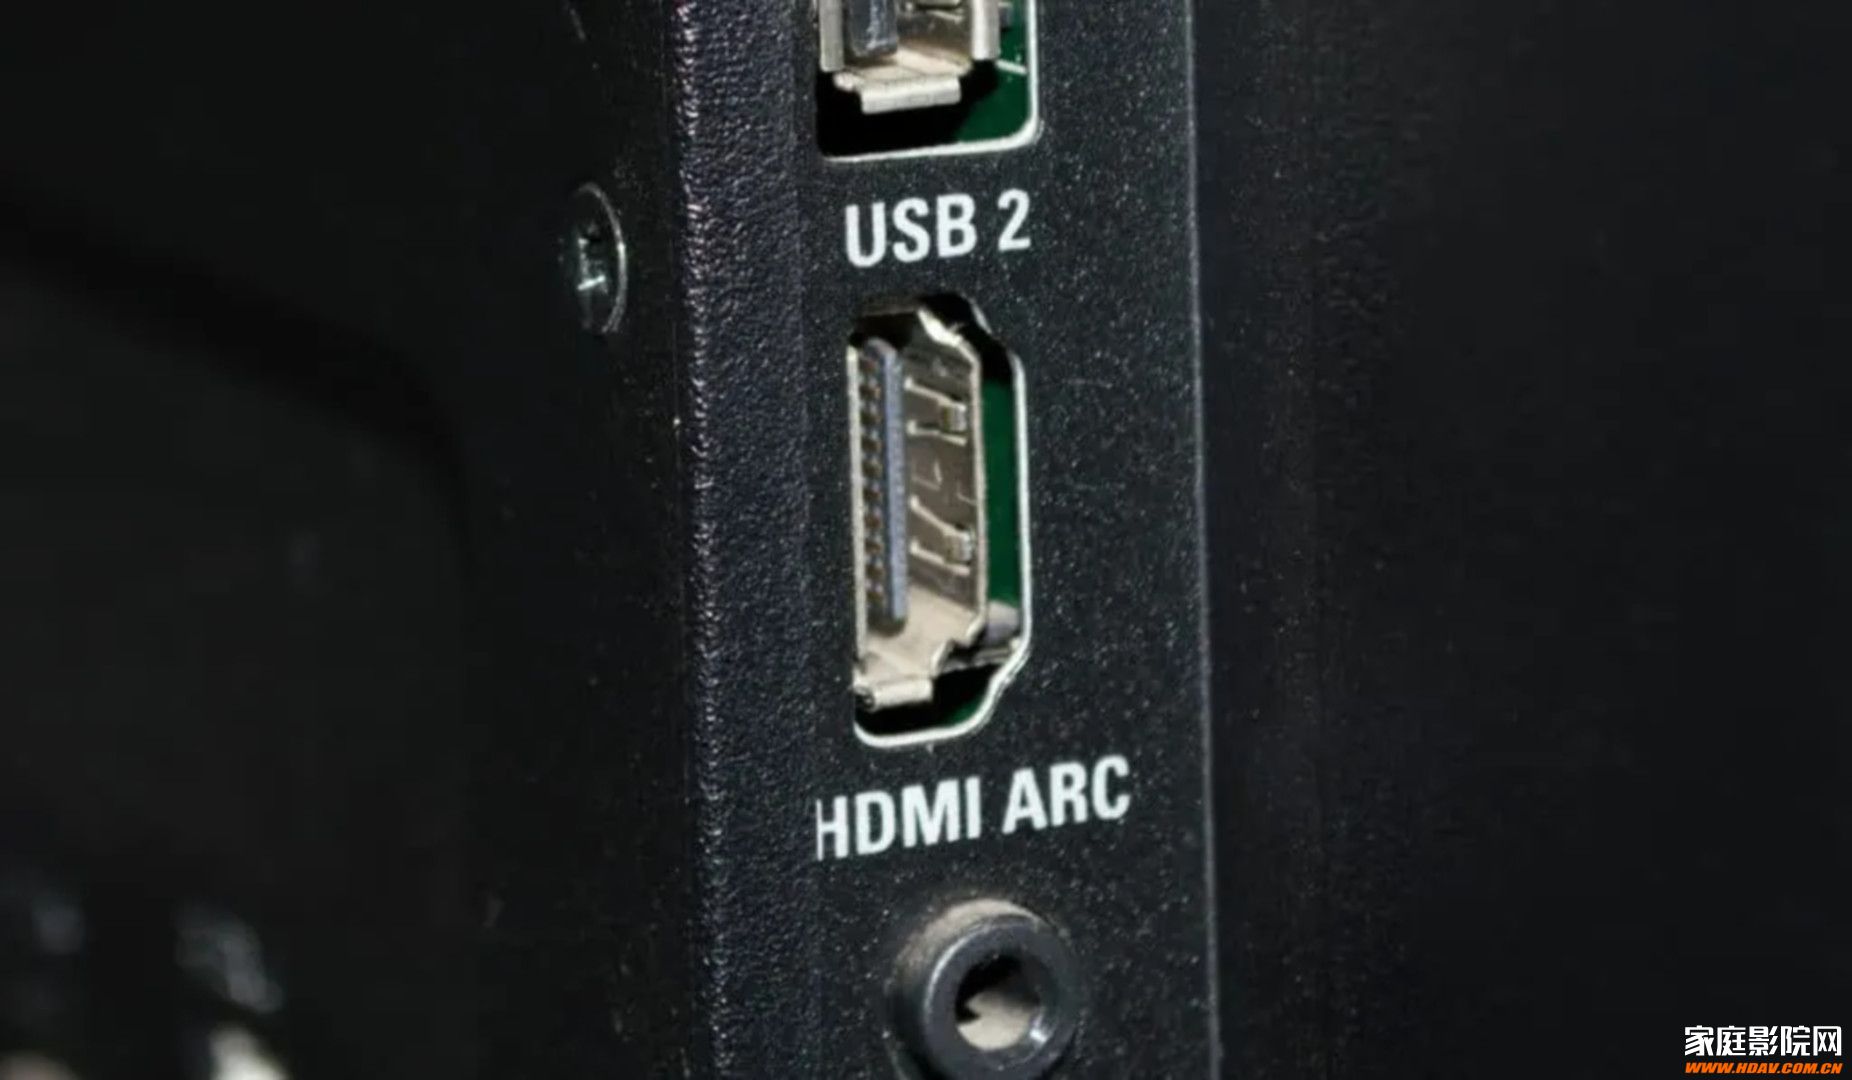 蜂蜜浏览器_TV-side-details-with-two-usb-inputs-one-hdmi-arc-and-headphone-jack-Smaller-2-1024x597.jpg.jpg